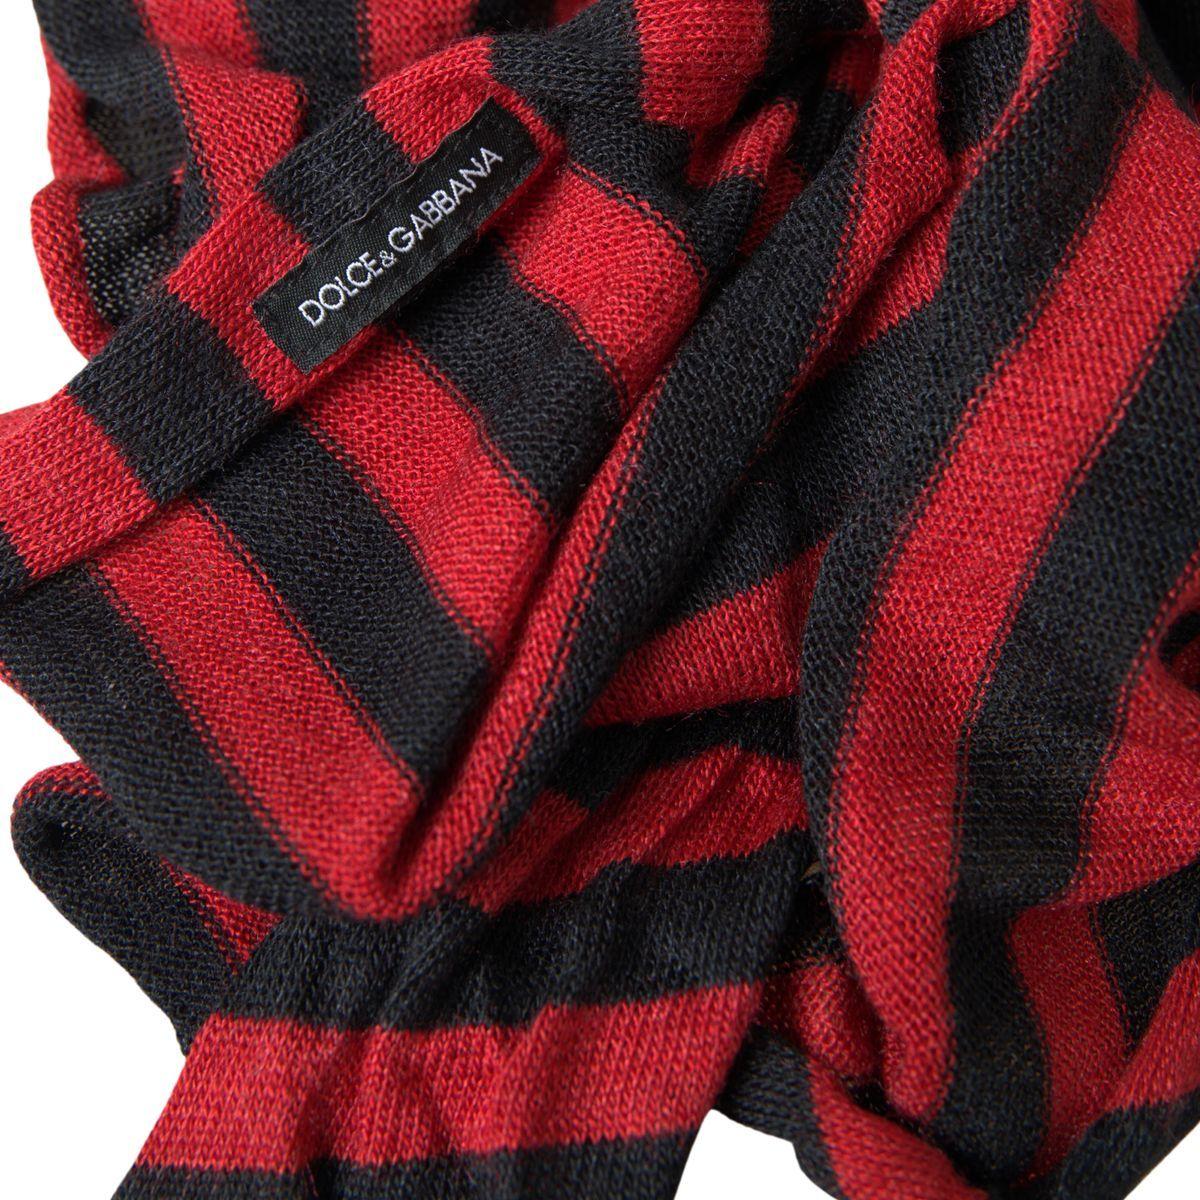 Dolce & Gabbana Elegant Striped Acrylic Wool Silk Scarf red-black-stripes-acrylic-wrap-shawl-scarf